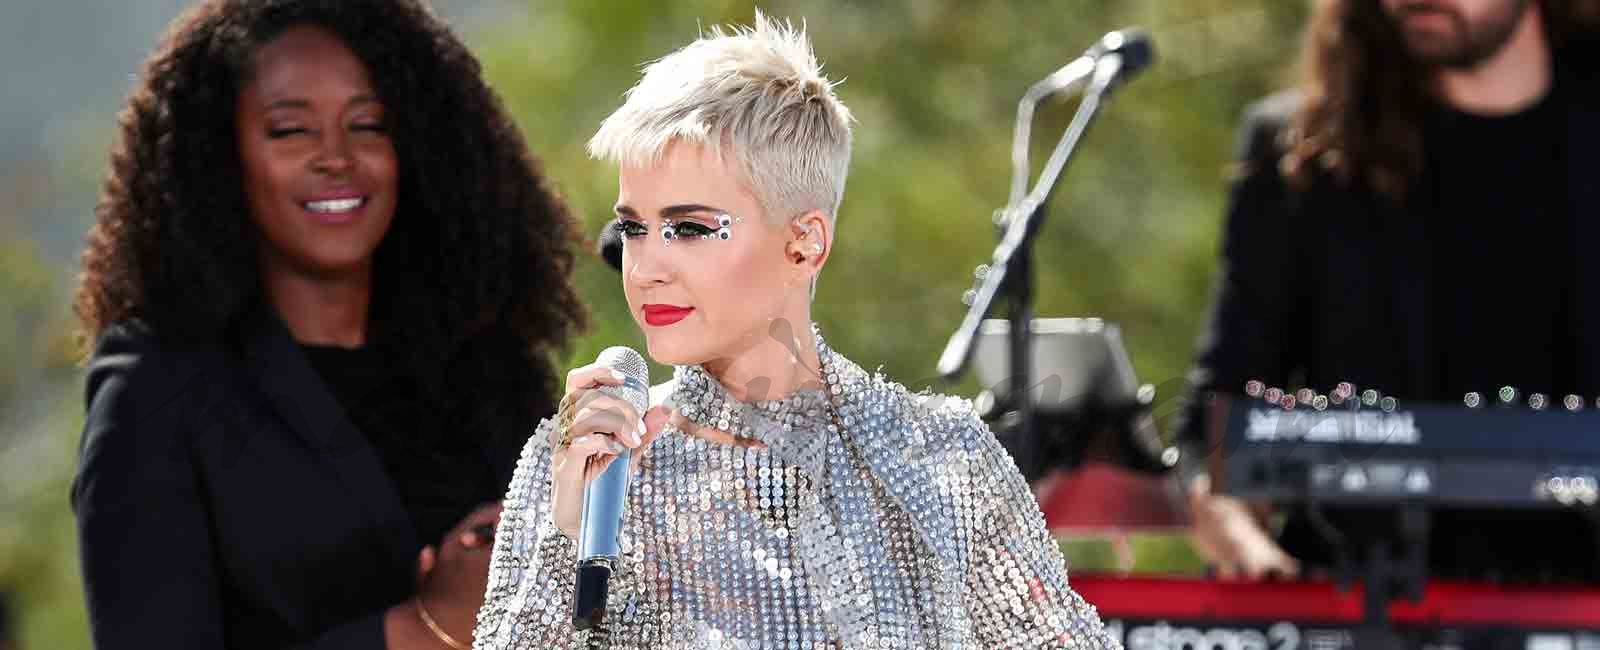 Katy Perry confiesa haber tenido pensamientos suicidas